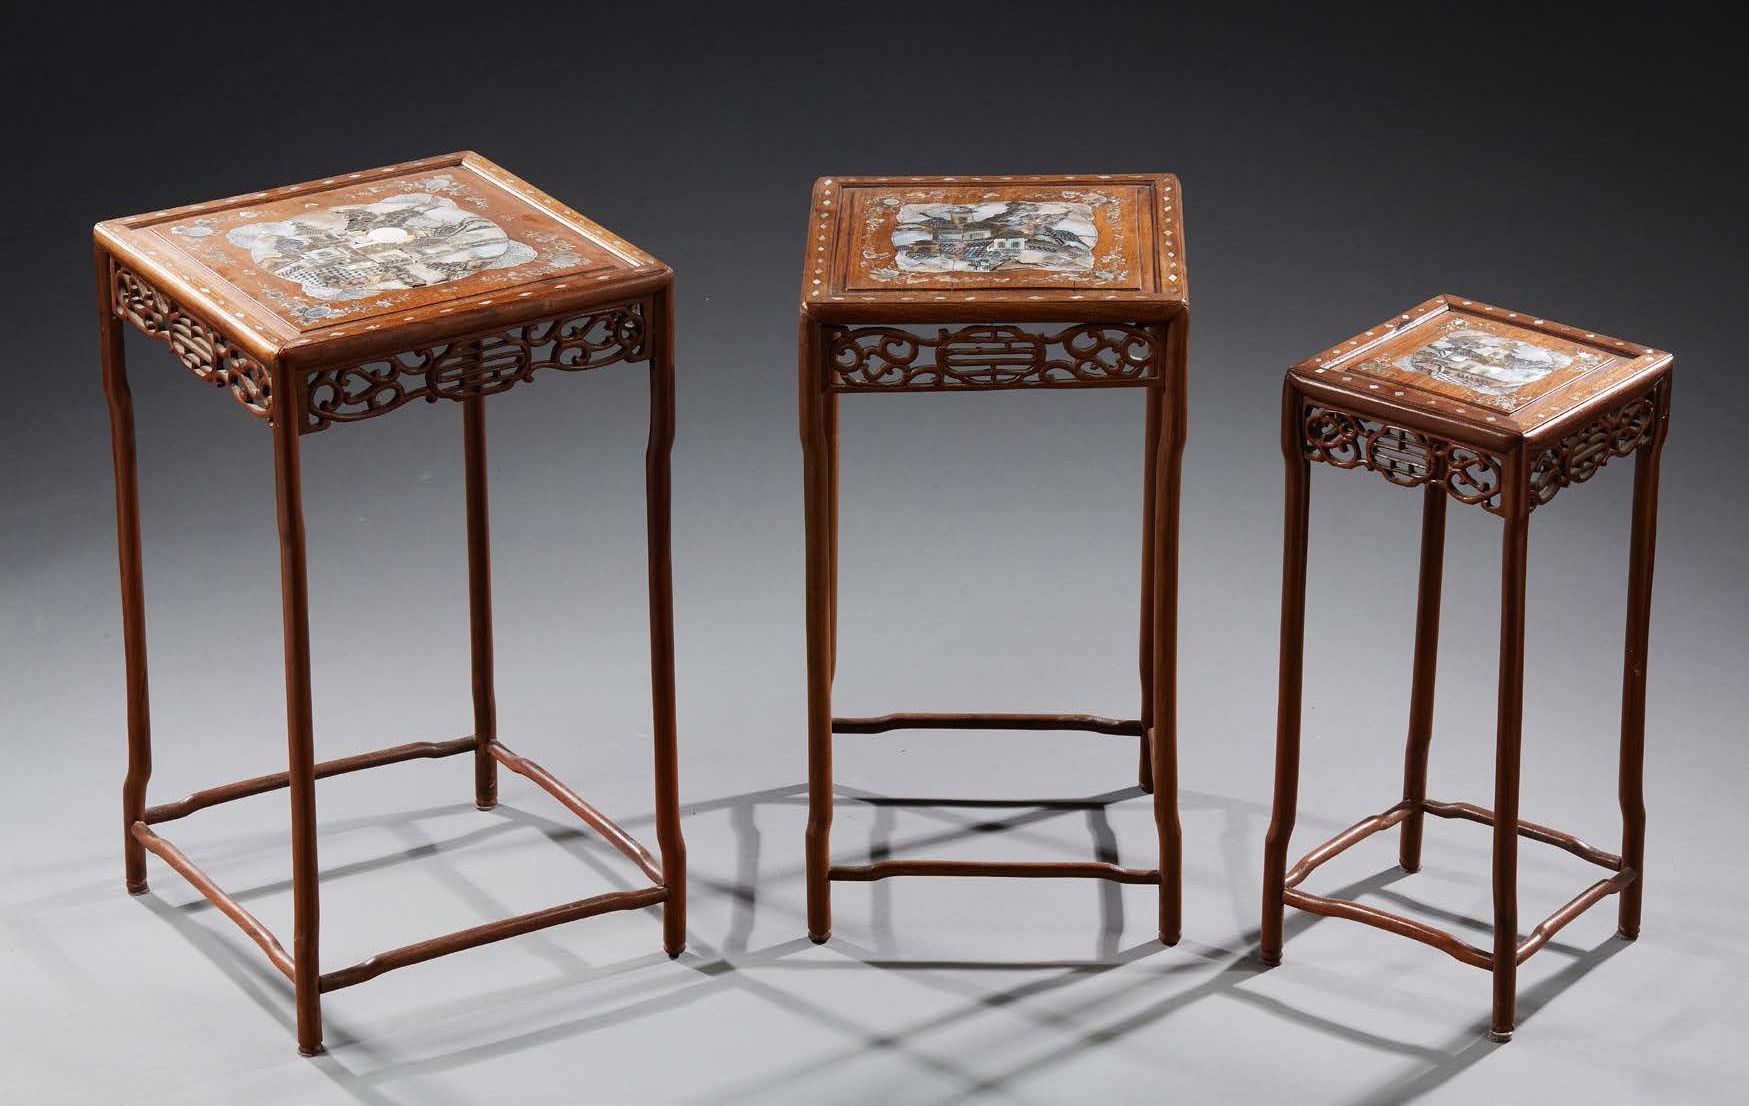 INDOCHINE 
1900年左右。
(事故和损坏) 三张嵌有珍珠母的木制嵌桌。